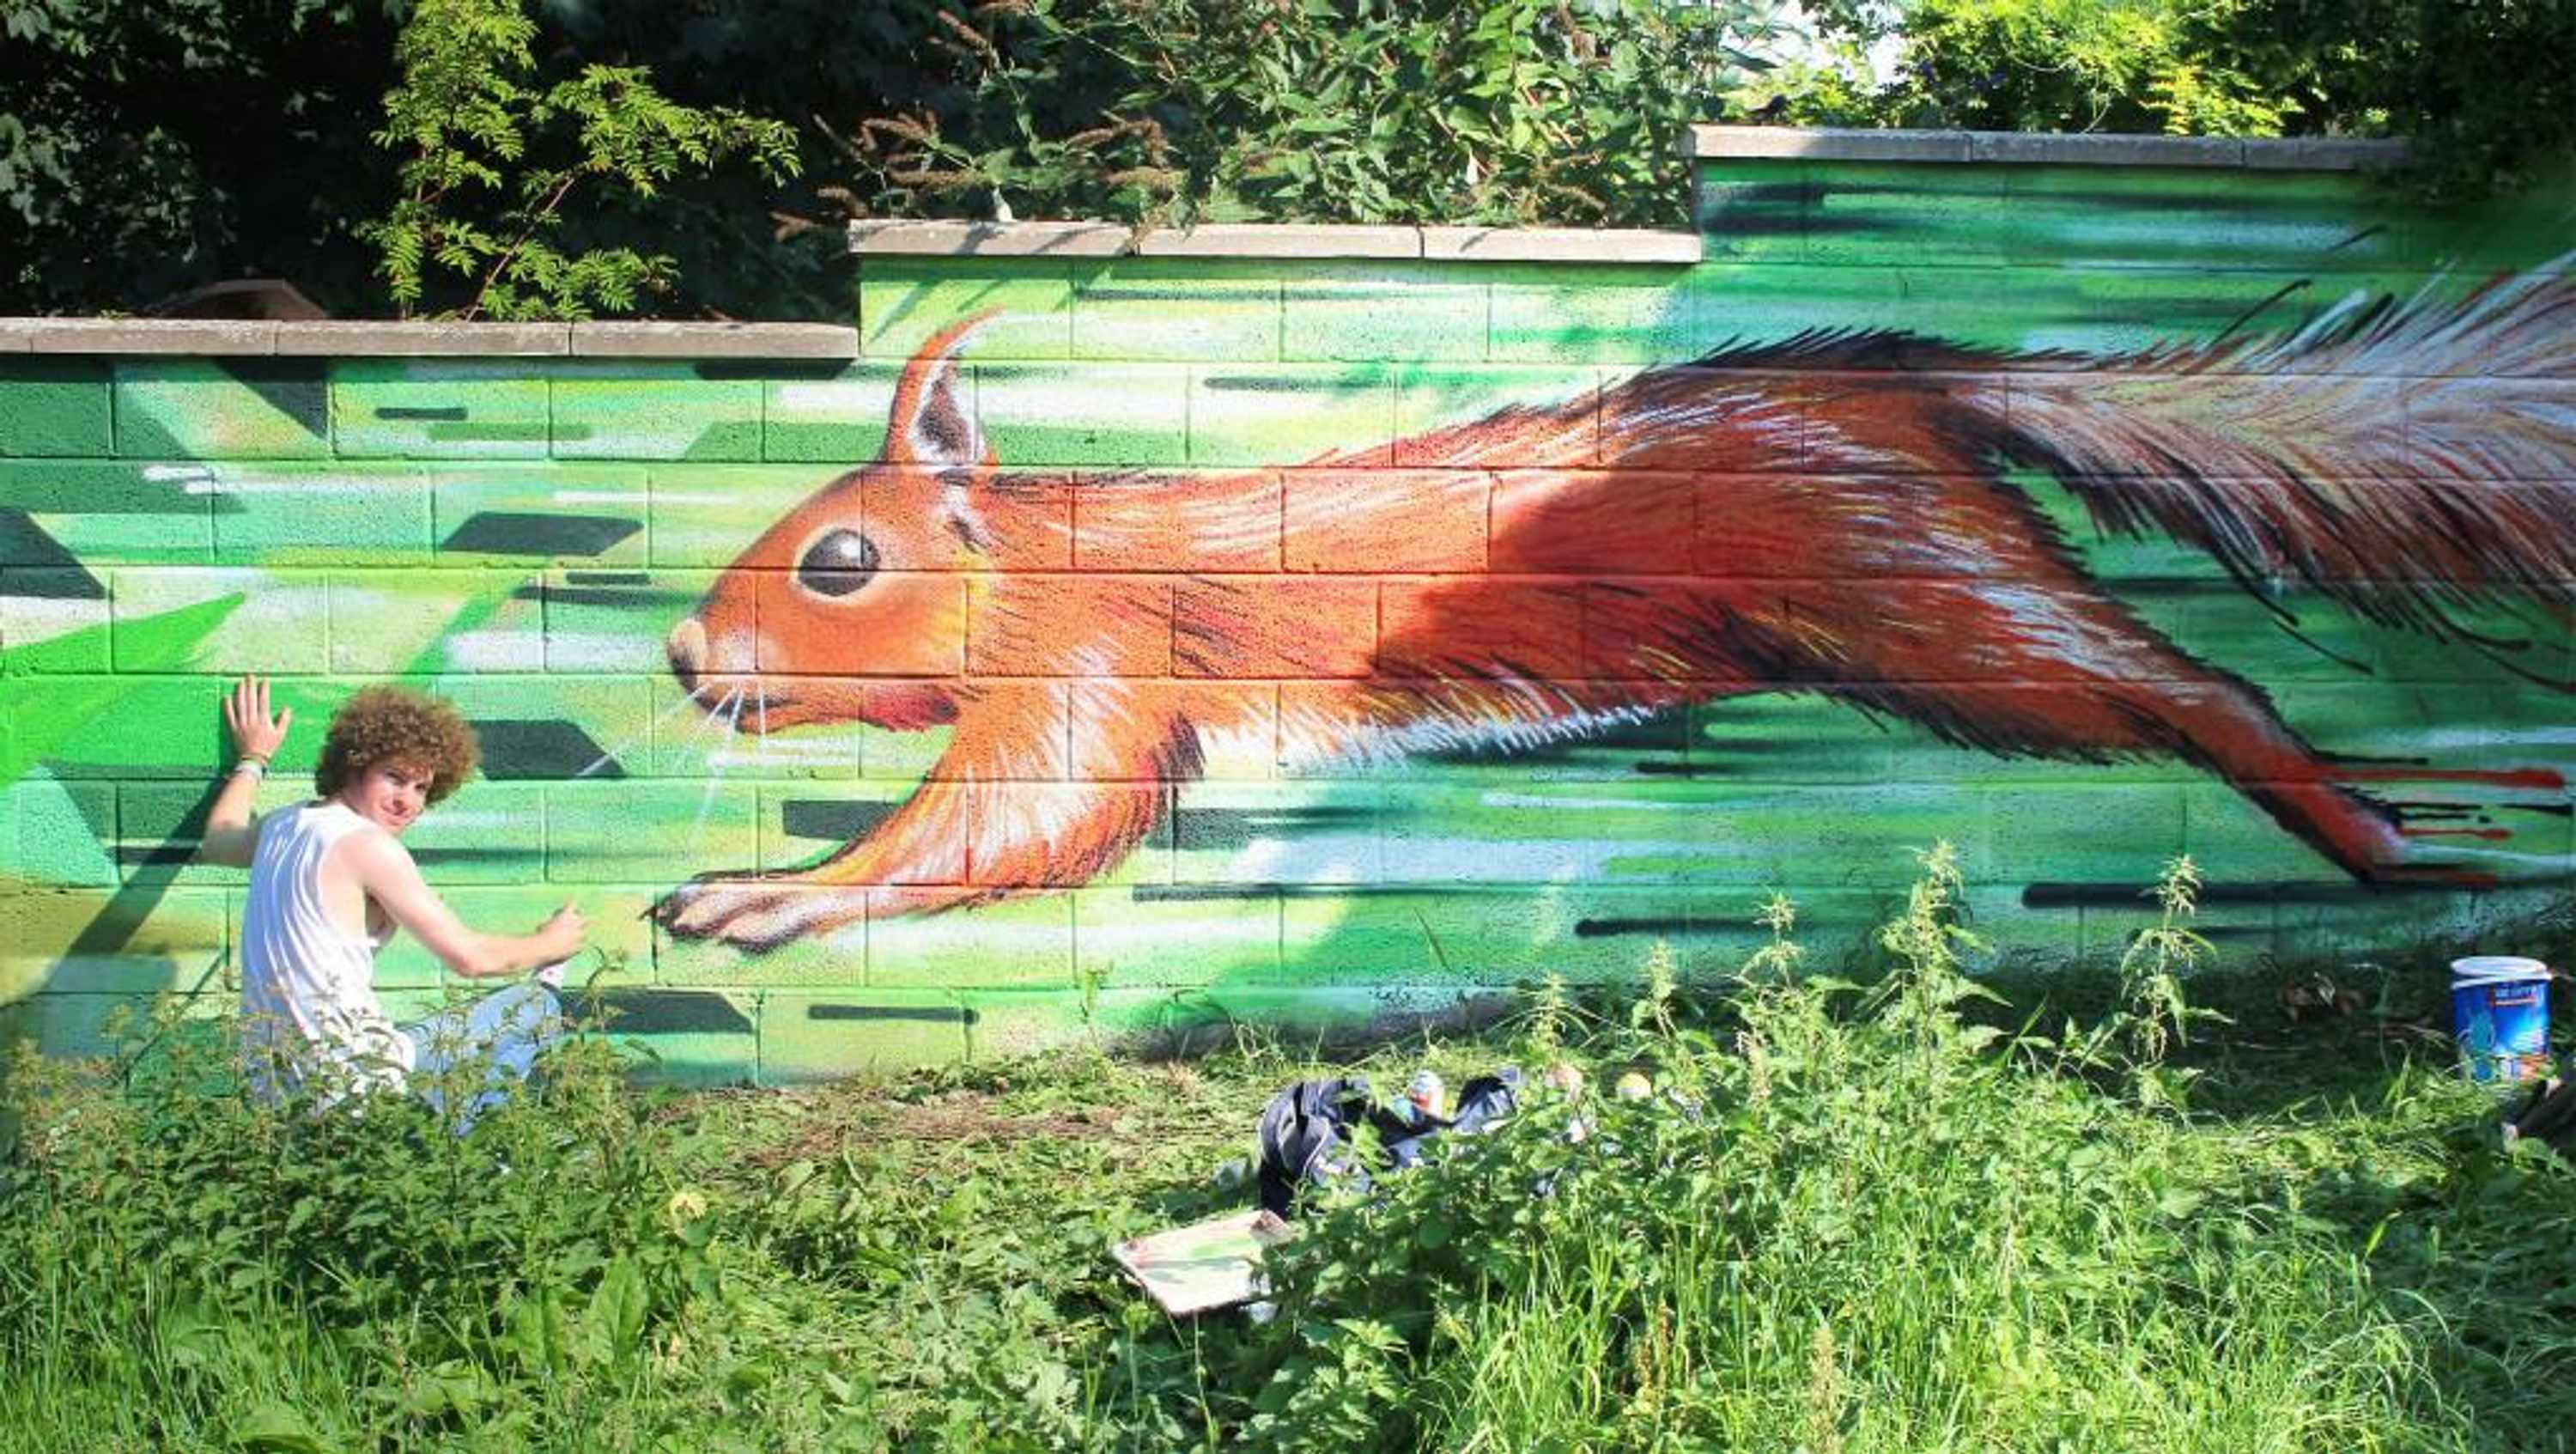 Painting Squirrel Arnos Vale Park LR